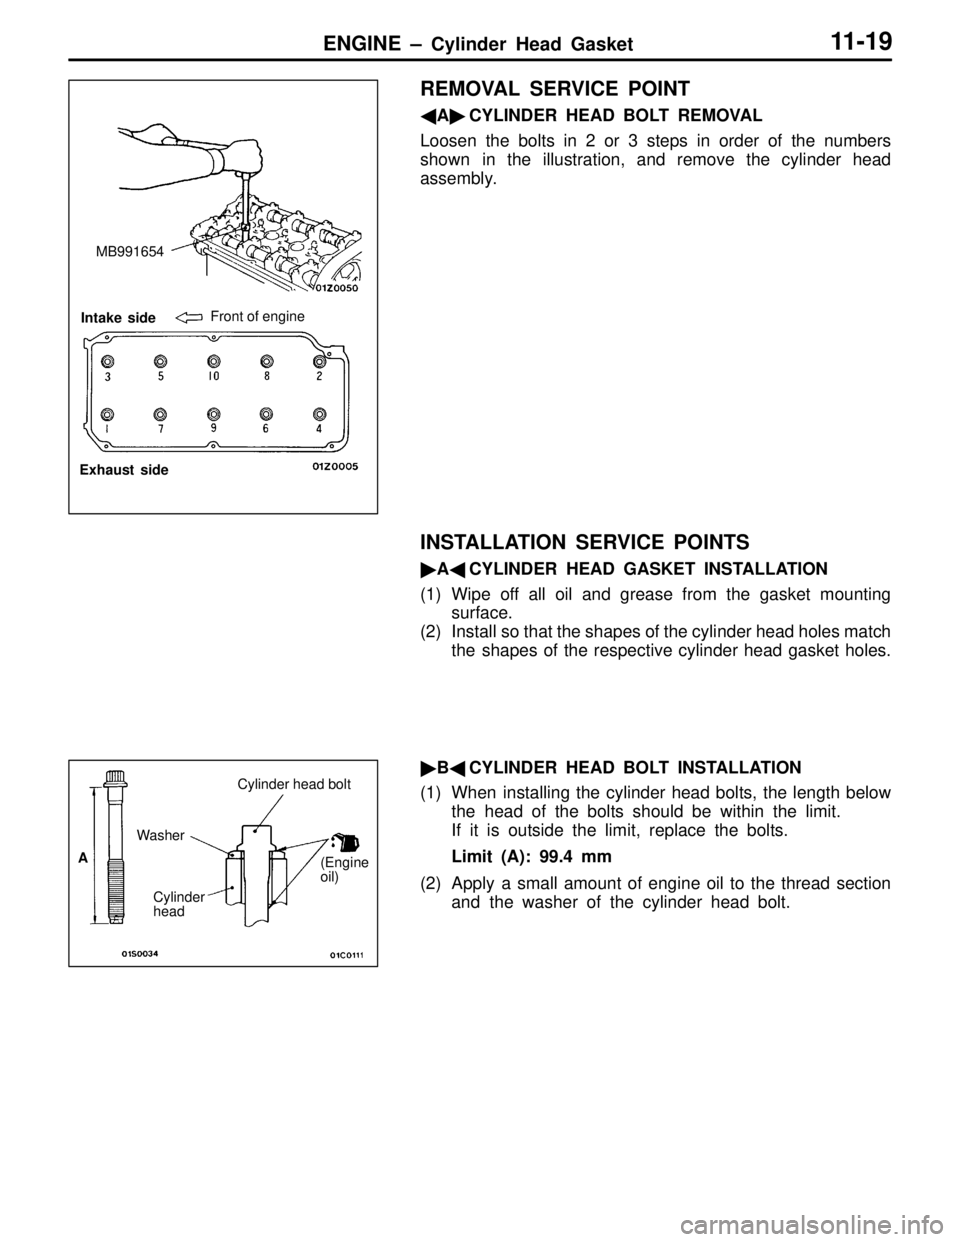 MITSUBISHI LANCER EVOLUTION IV 1998 Owners Manual ENGINE – Cylinder Head Gasket11-19
REMOVAL SERVICE POINT
ACYLINDER HEAD BOLT REMOVAL
Loosen the bolts in 2 or 3 steps in order of the numbers
shown in the illustration, and remove the cylinder hea